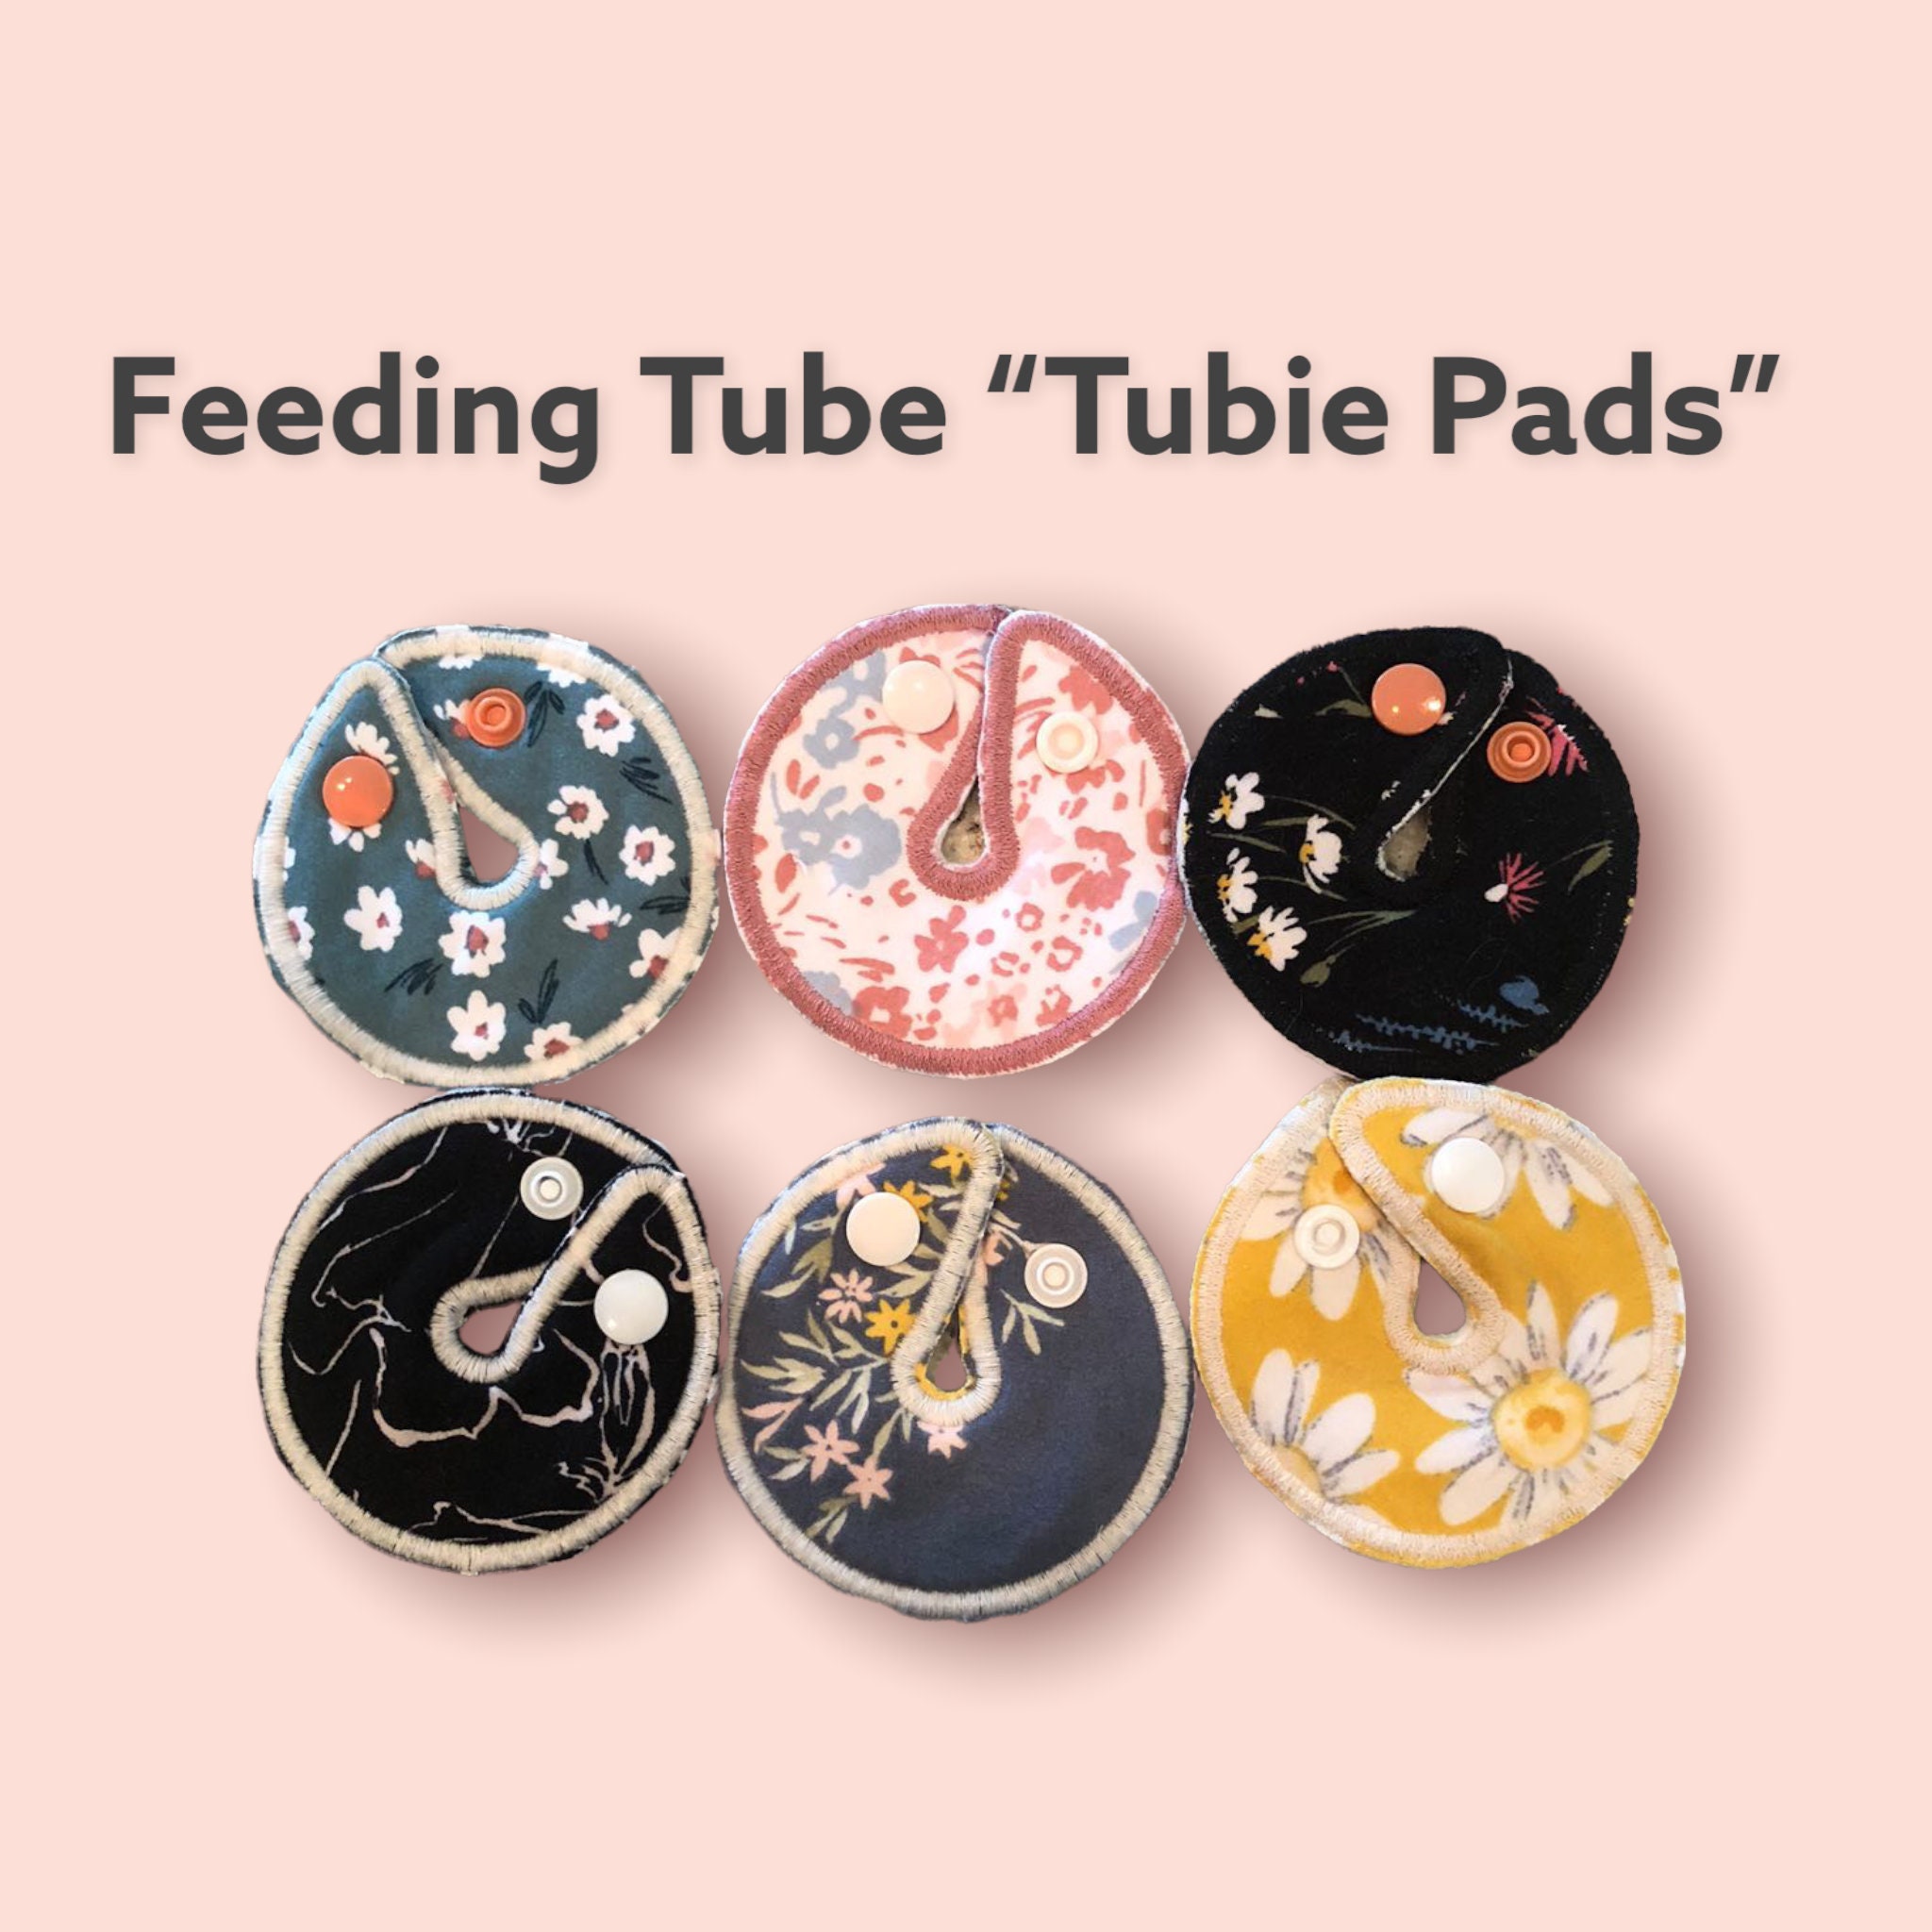 Kleding Unisex kinderkleding Onderkleding feeding tube button cover Set of 2 Tubie pad GJ,J,Peg & Gtube Pads 